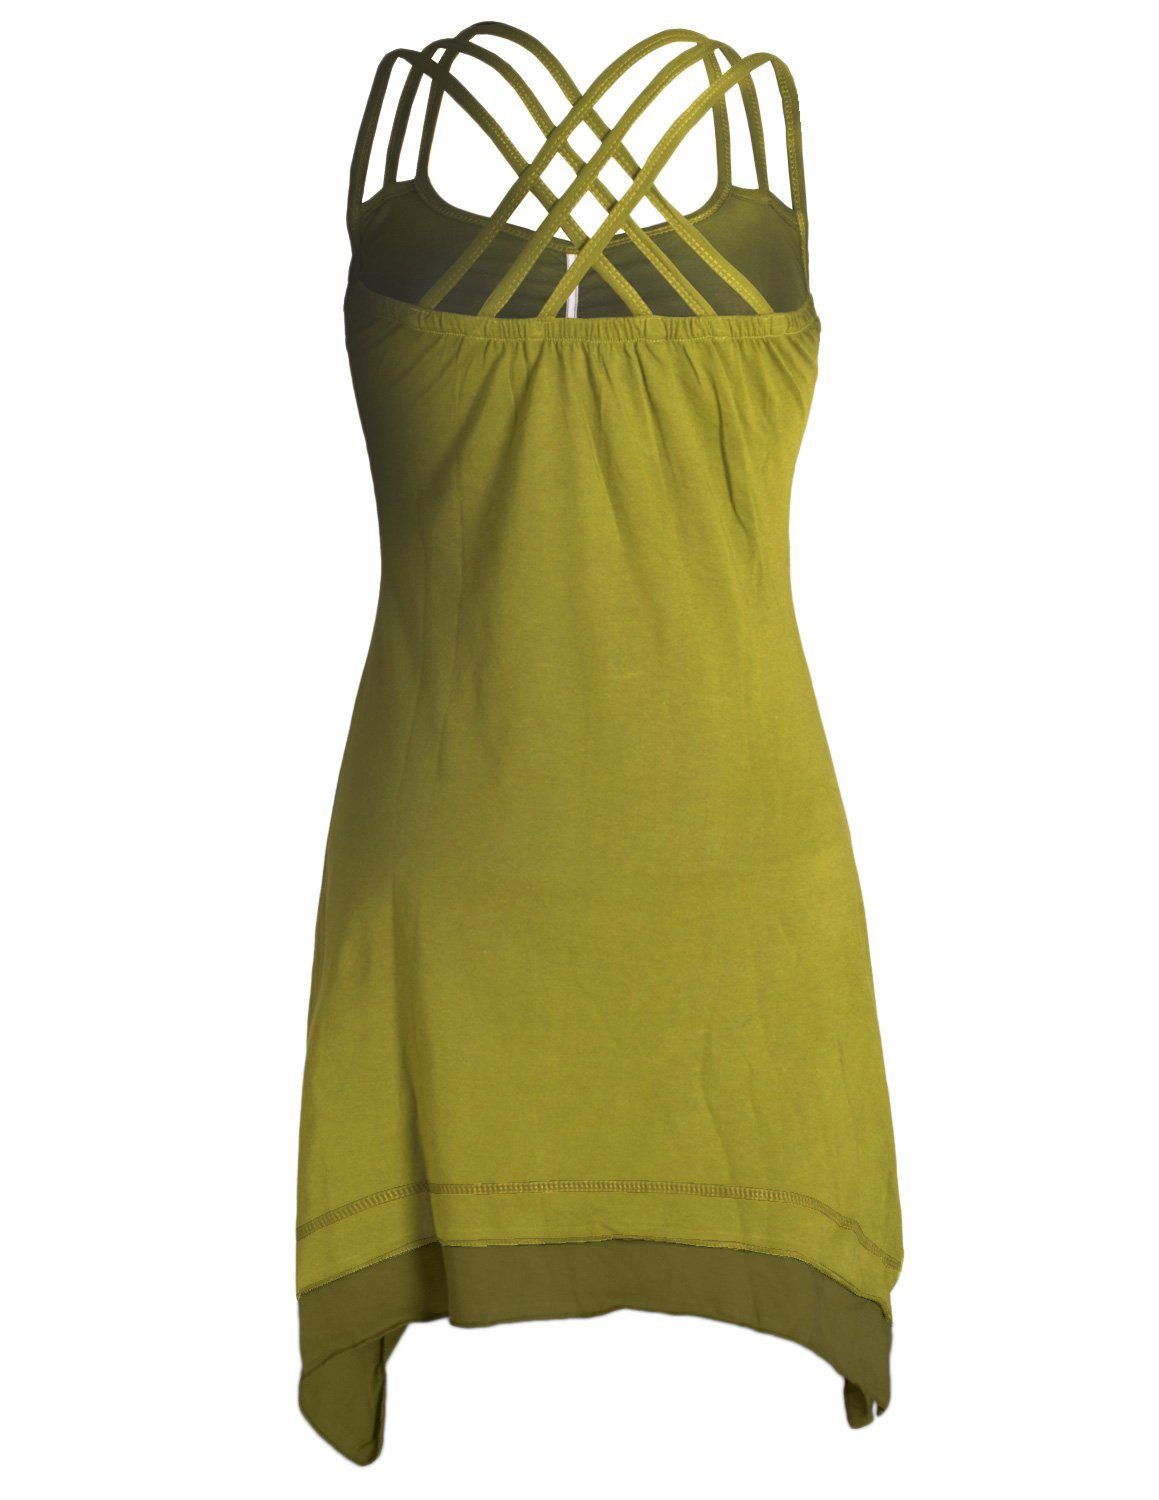 Vishes Sommerkleid Style Cotton Organic Hippie, Trägerkleid Zipfeln Boho hellgrün Lagenlook mit Elfen